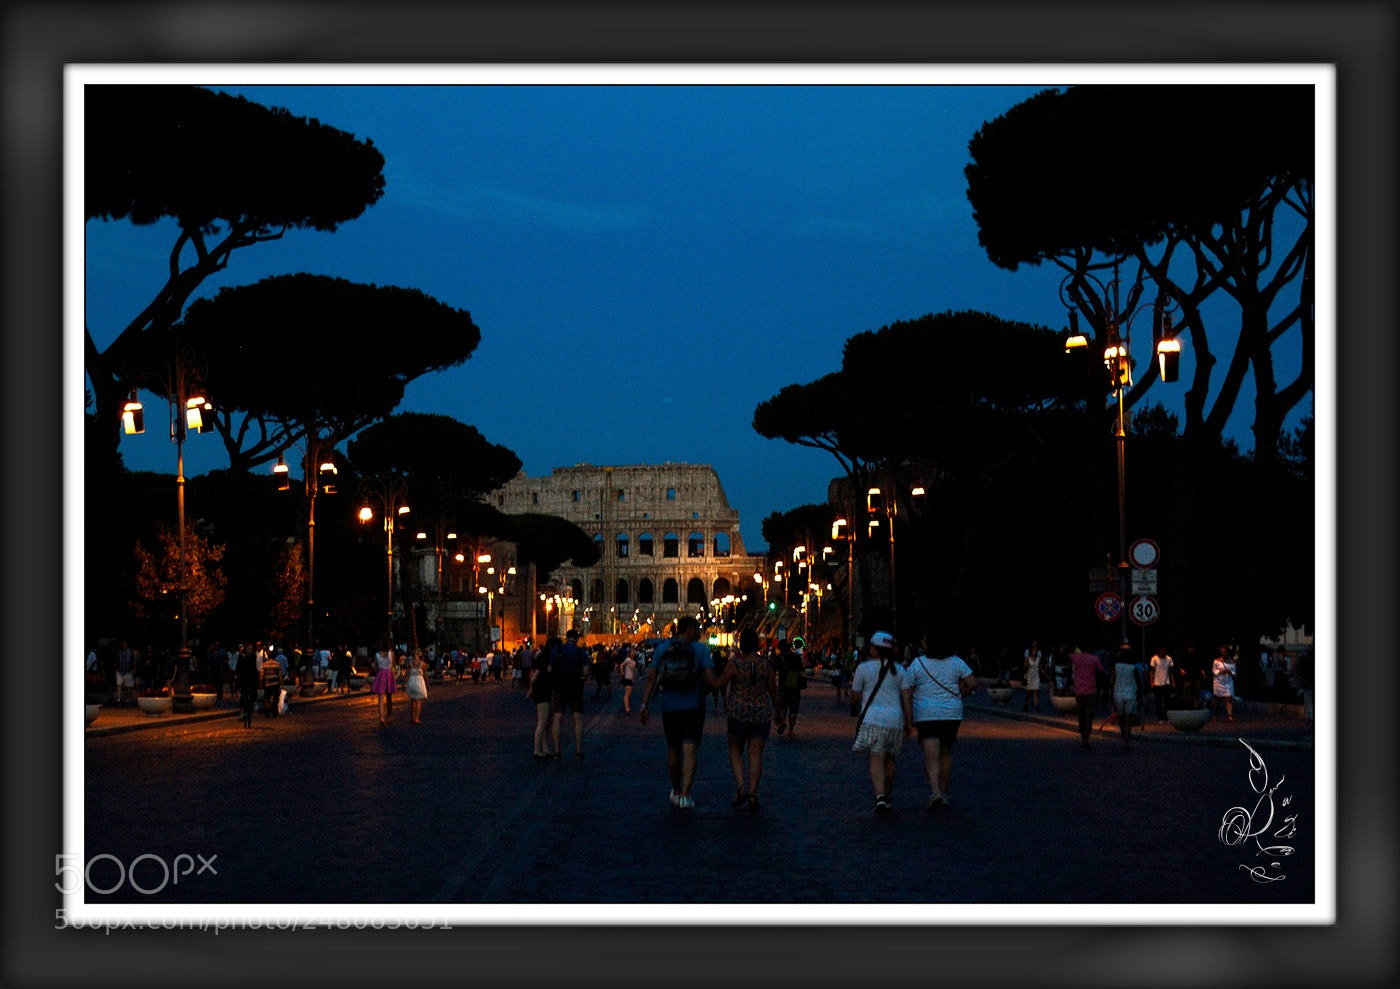 Nikon D70 sample photo. Colosseo photography